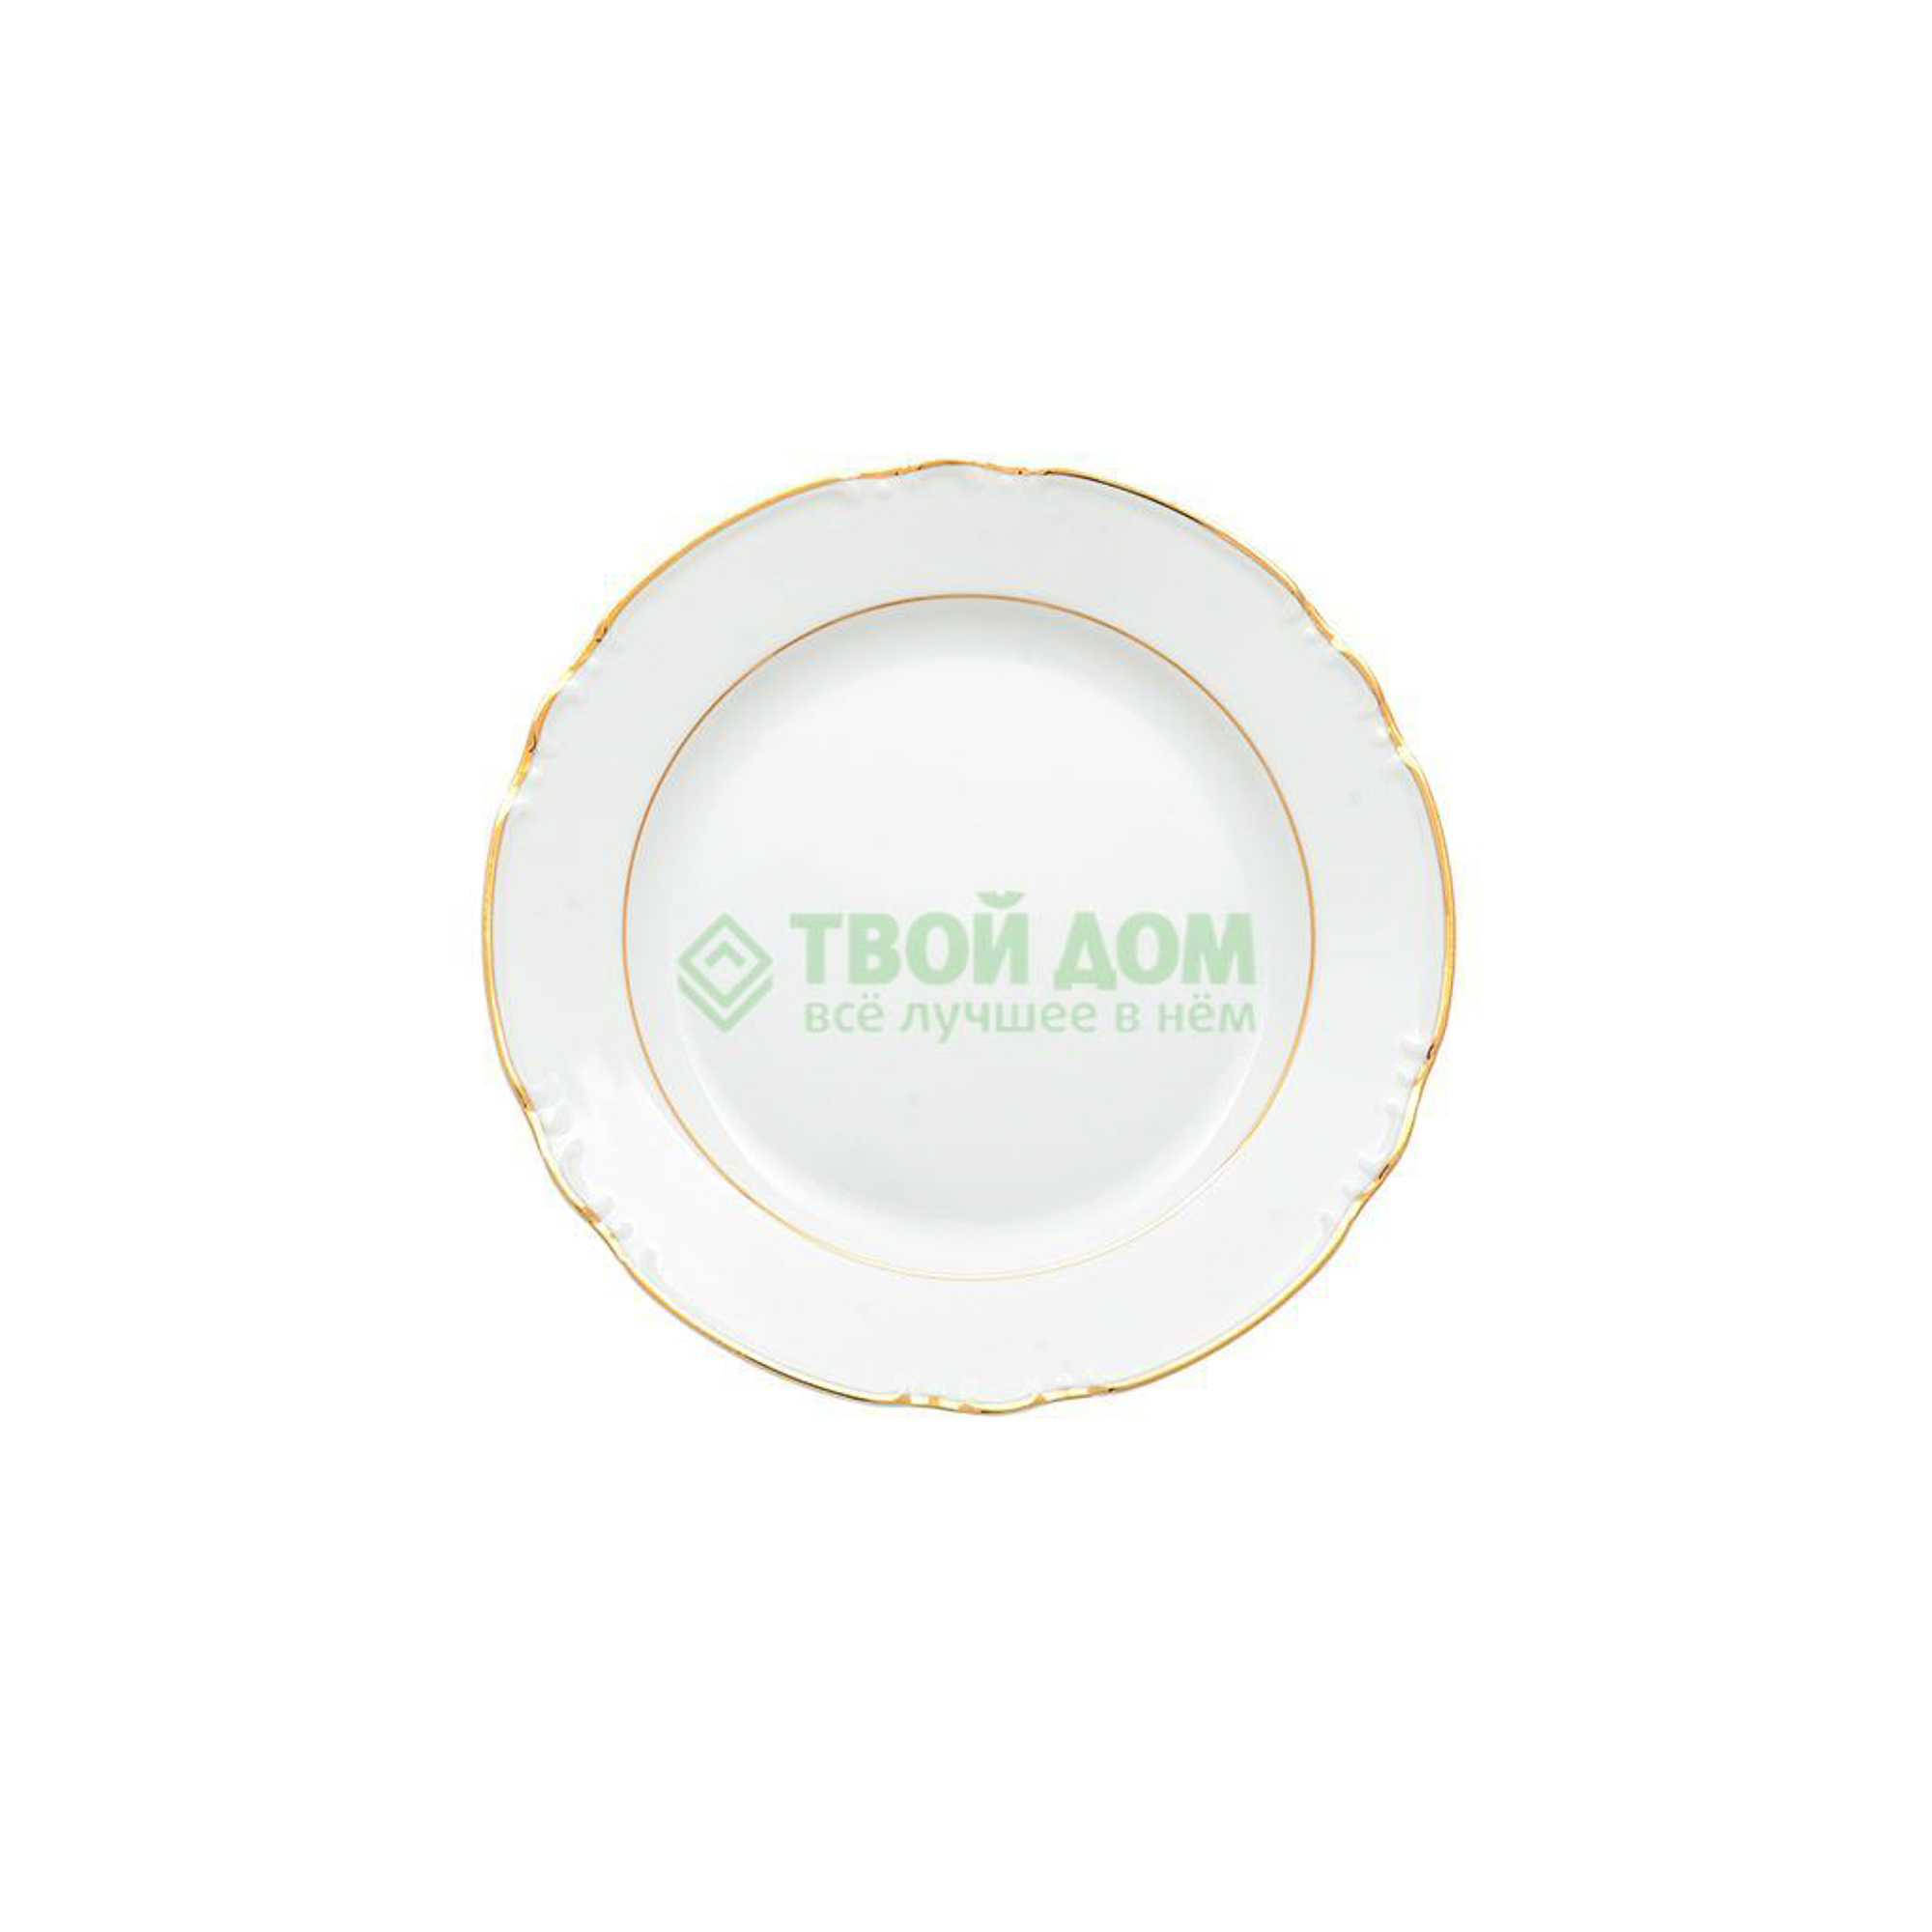 Тарелка Thun Констанция отводка золото 24 см тарелка десертная thun 1794 констанция гуси 19 см